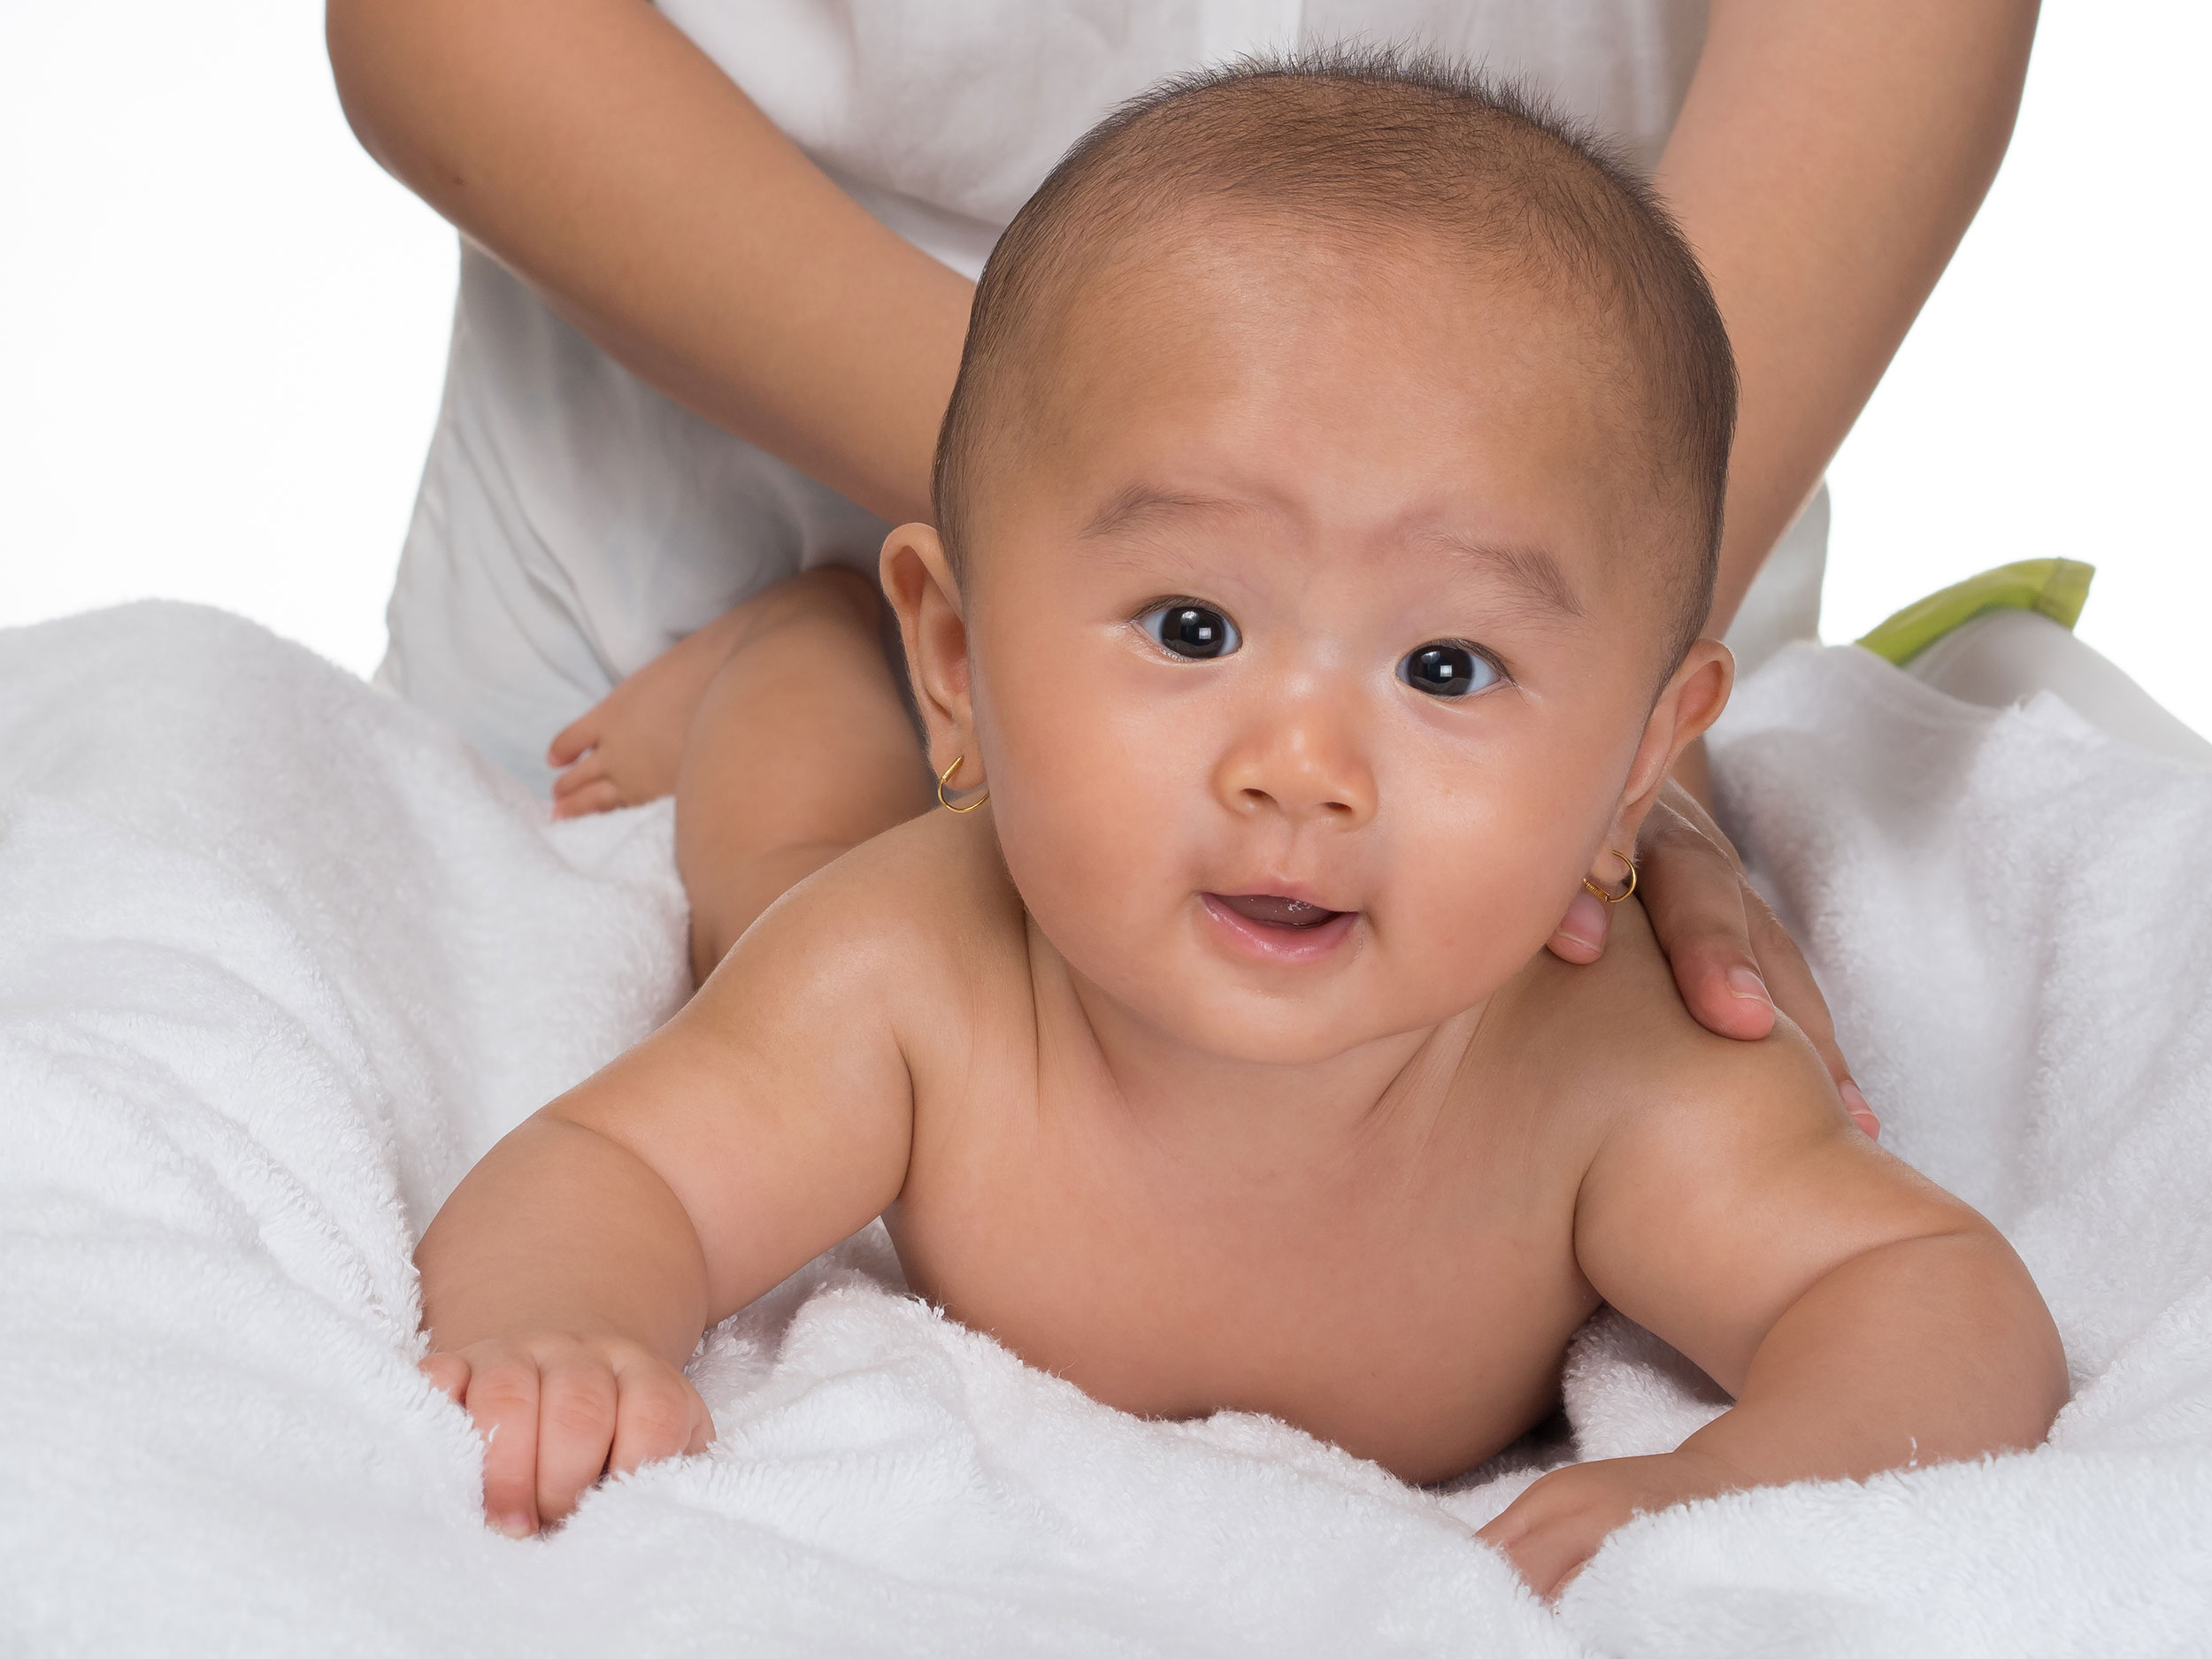 Pijatan lembut dengan minyak telon atau essential oil bisa menghangatkan bayi